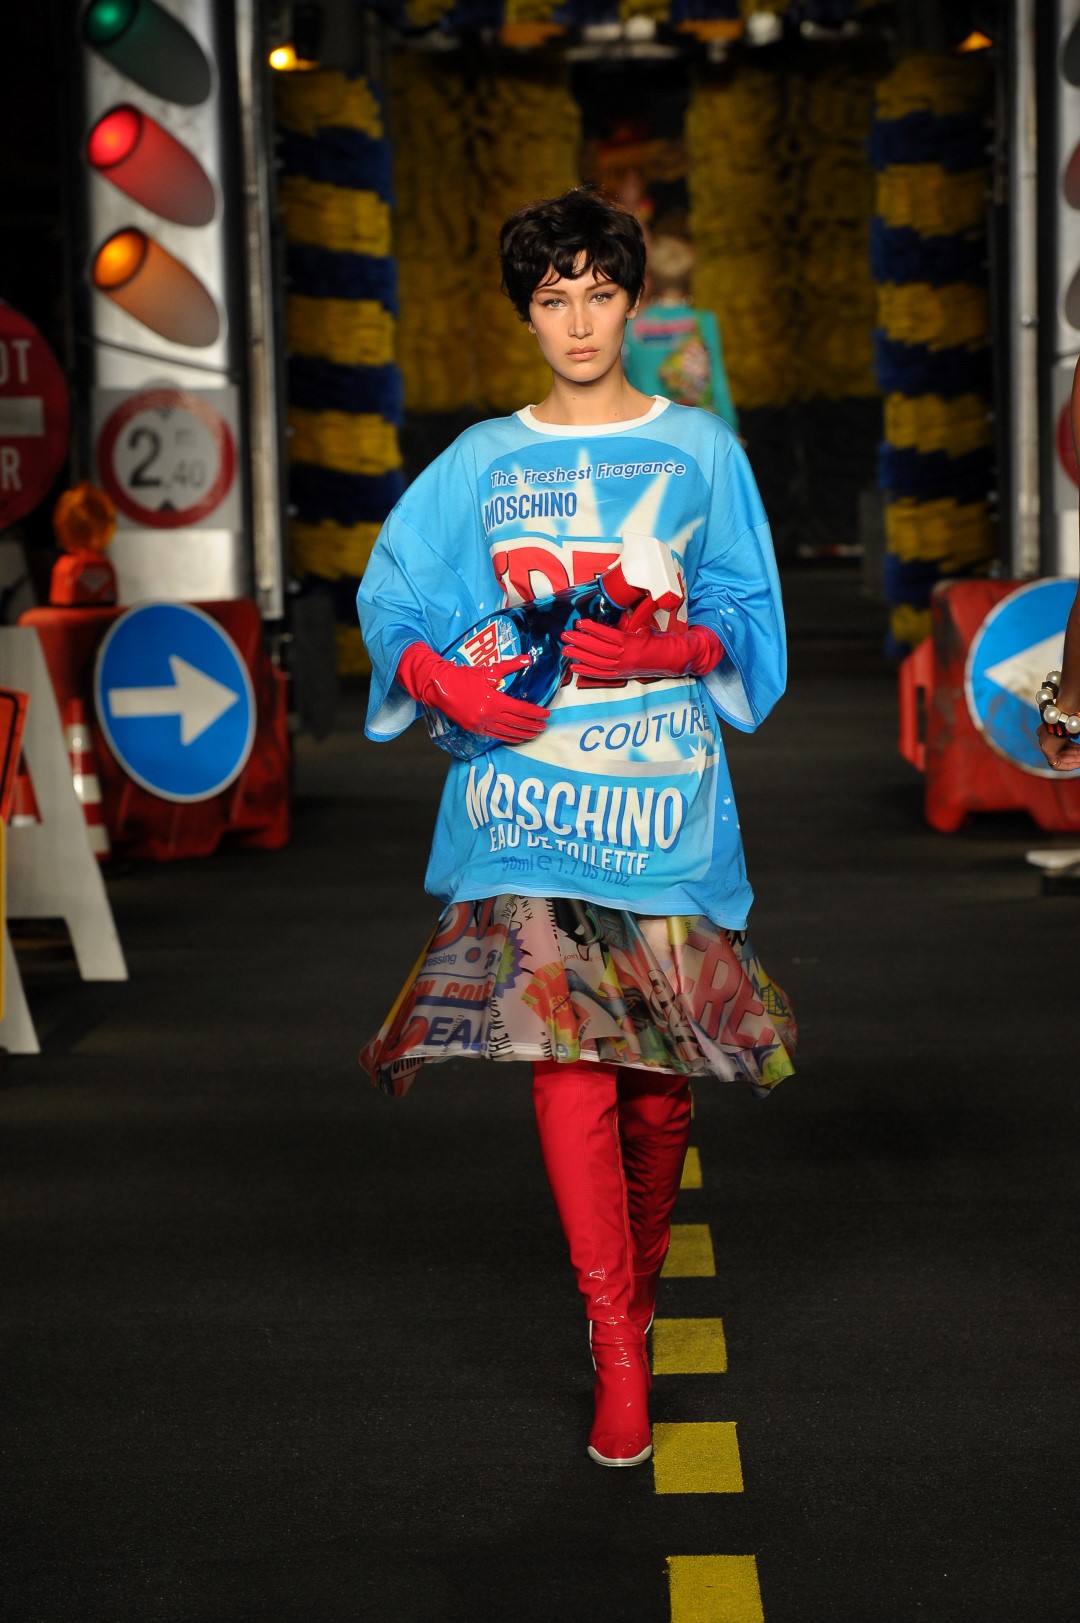 Moschino collezione donna primavera estate 2016: la Dangerous Couture di Jeremy Scott, la sfilata a Milano